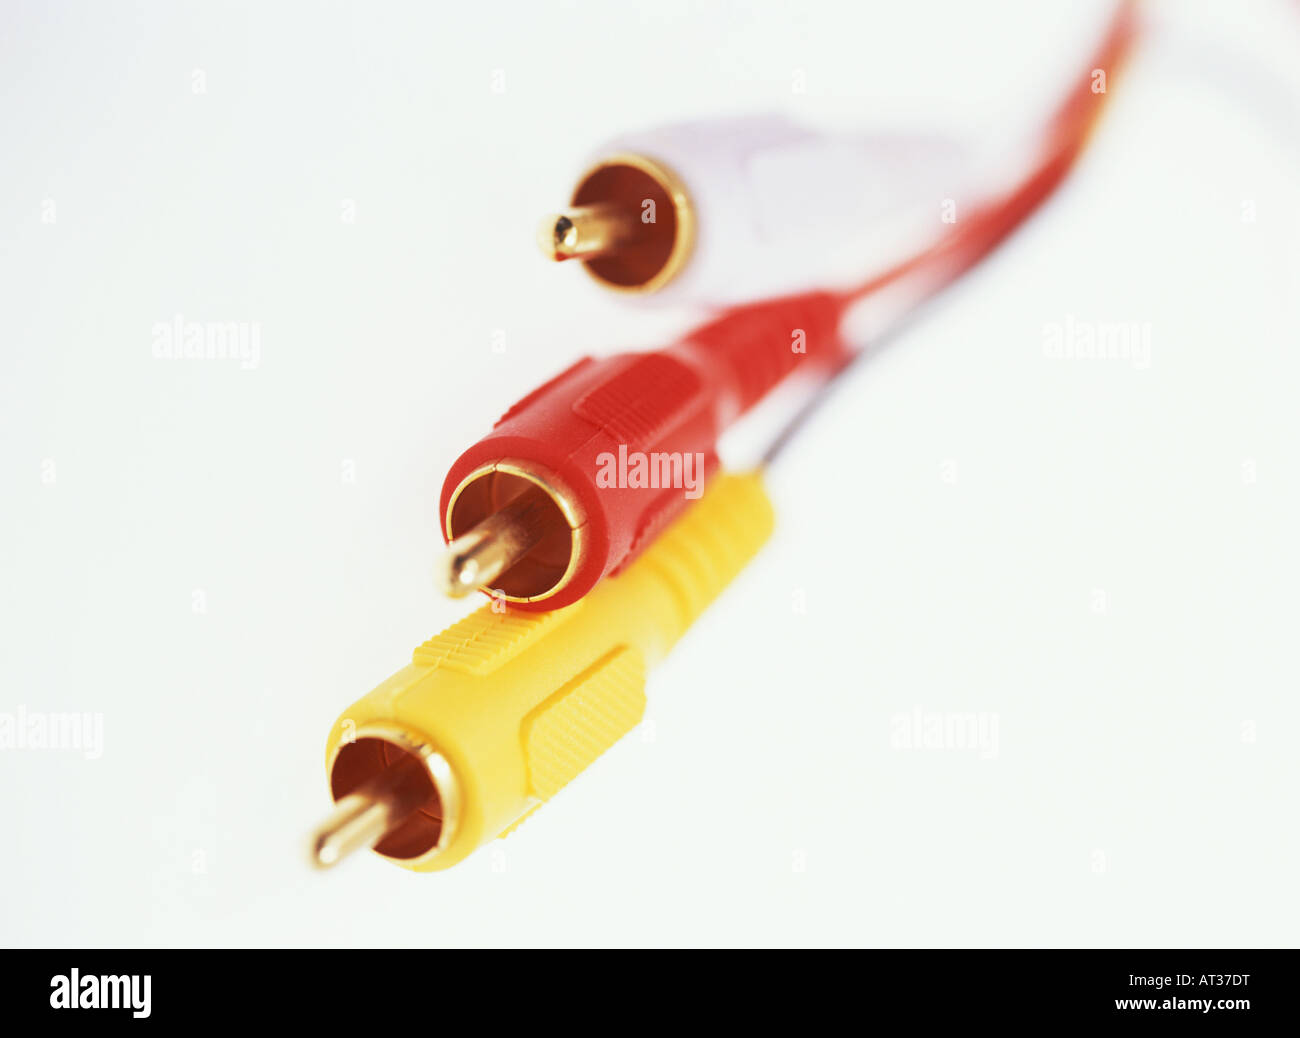 Gelb, weiß und rot-AV-Kabel Stockfotografie - Alamy